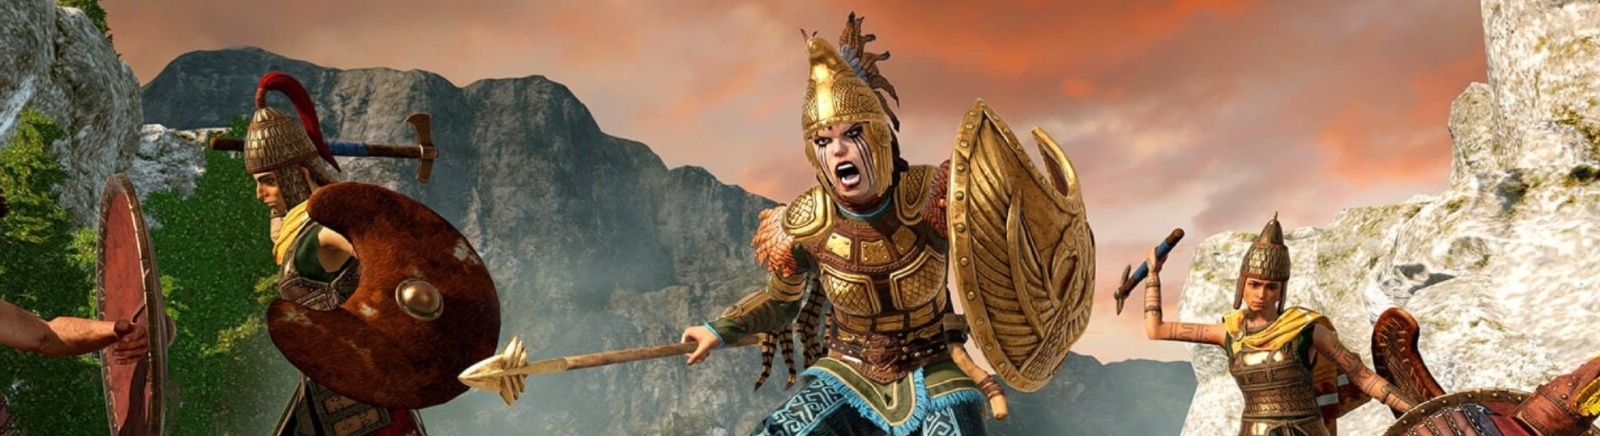 Дата выхода Total War Saga: Troy - Amazons  на PC в России и во всем мире